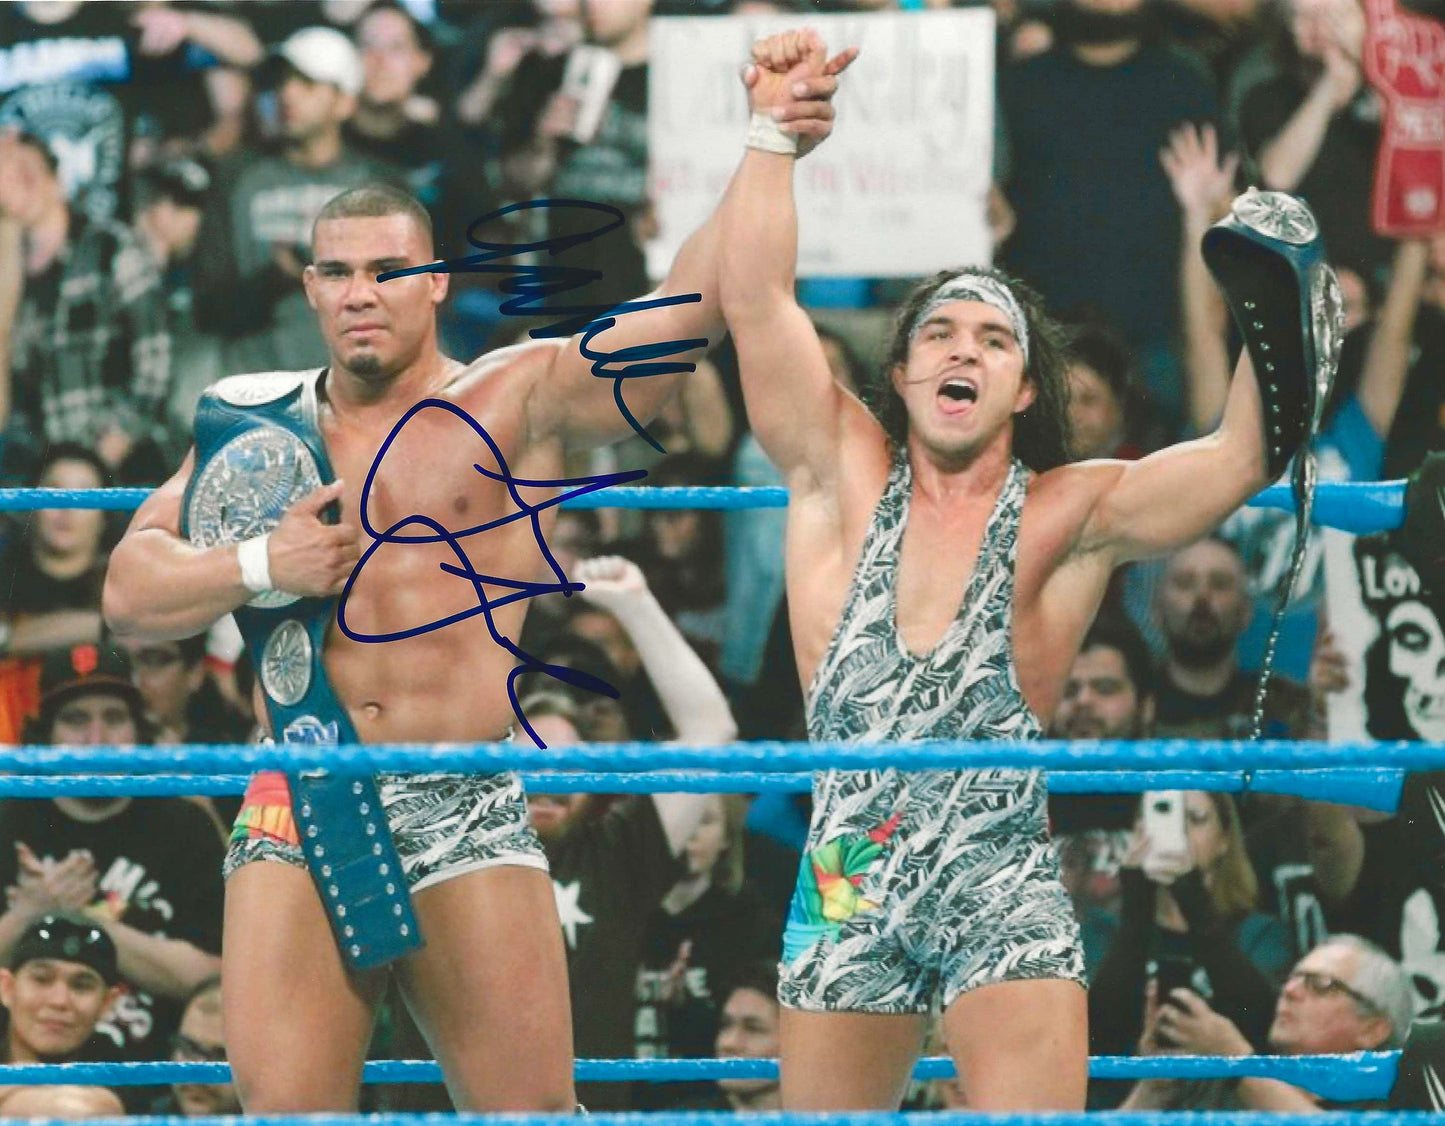 Jason Jordan & Chad Gable Autographed Signed "WWE" 8X10 Photo Elite Promotions & Graphz Authentication